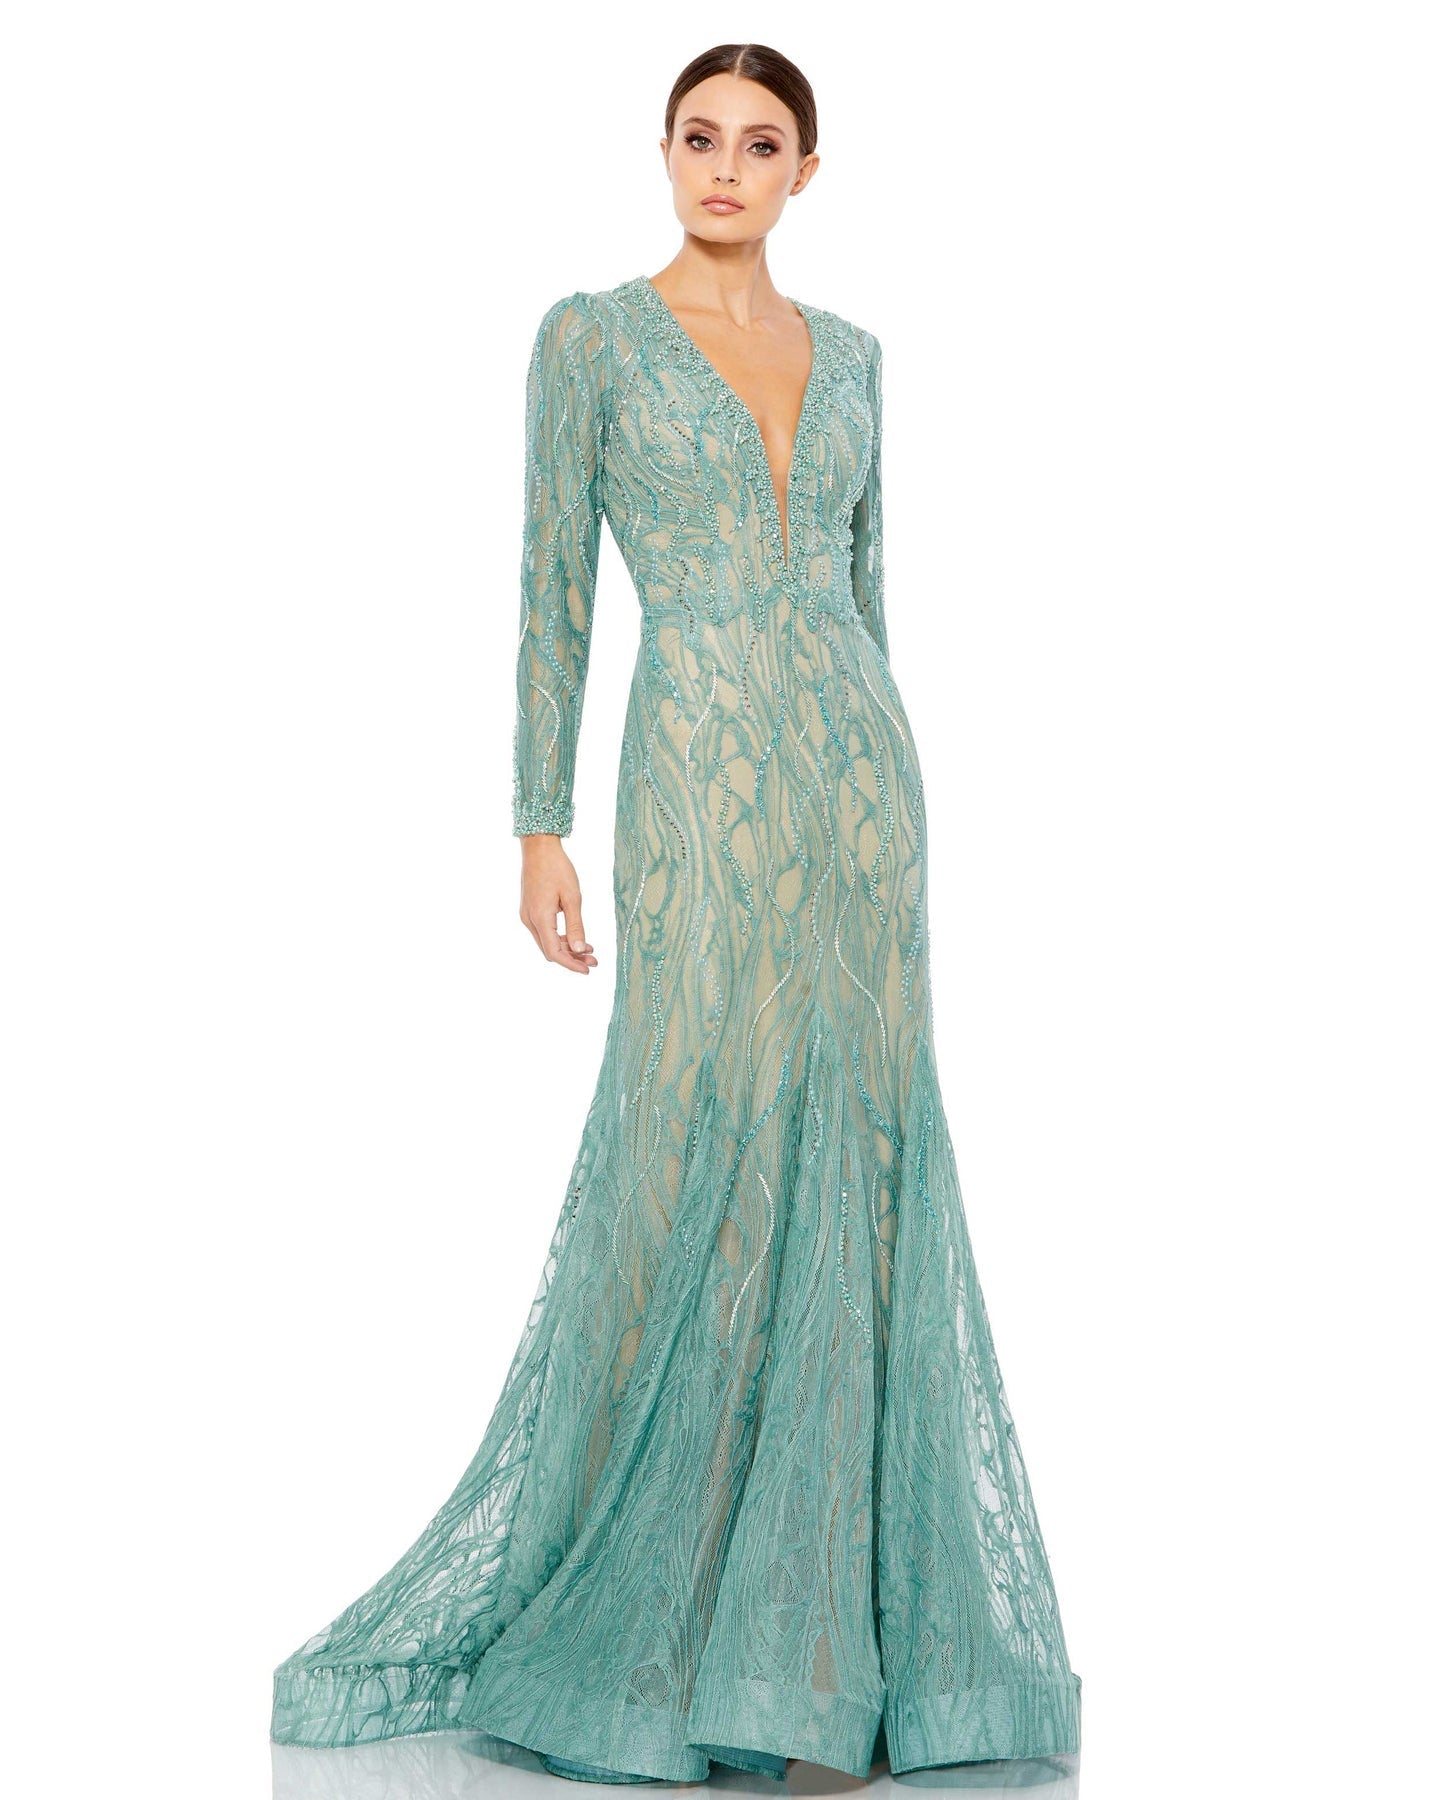 Light Blue Ball Gown Modest Long Sleeve Wedding Dress 66601 High Neck –  Viniodress